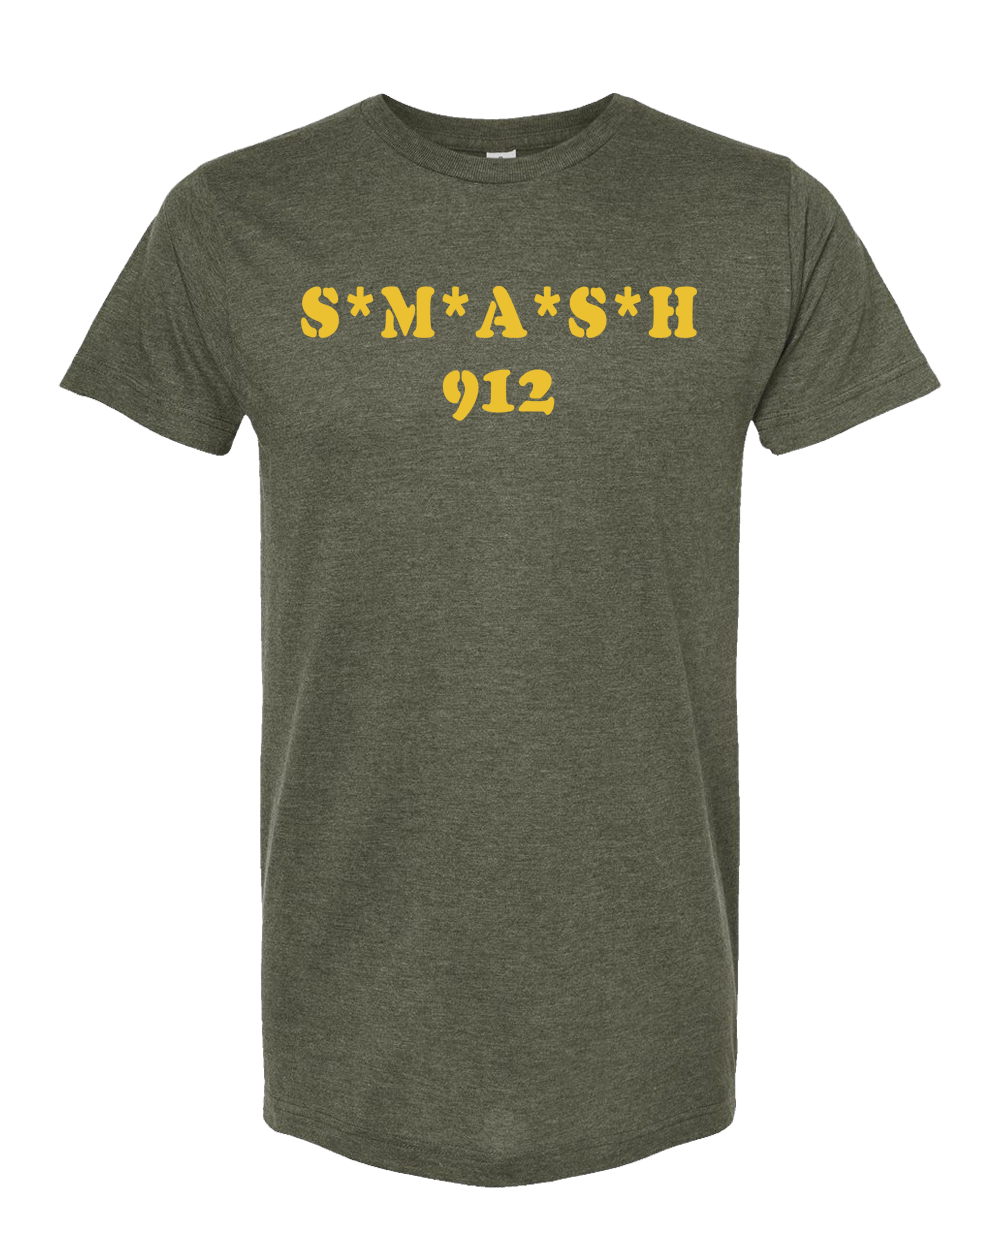 Smashed Savannah “SMASH 912” Unisex T-Shirt